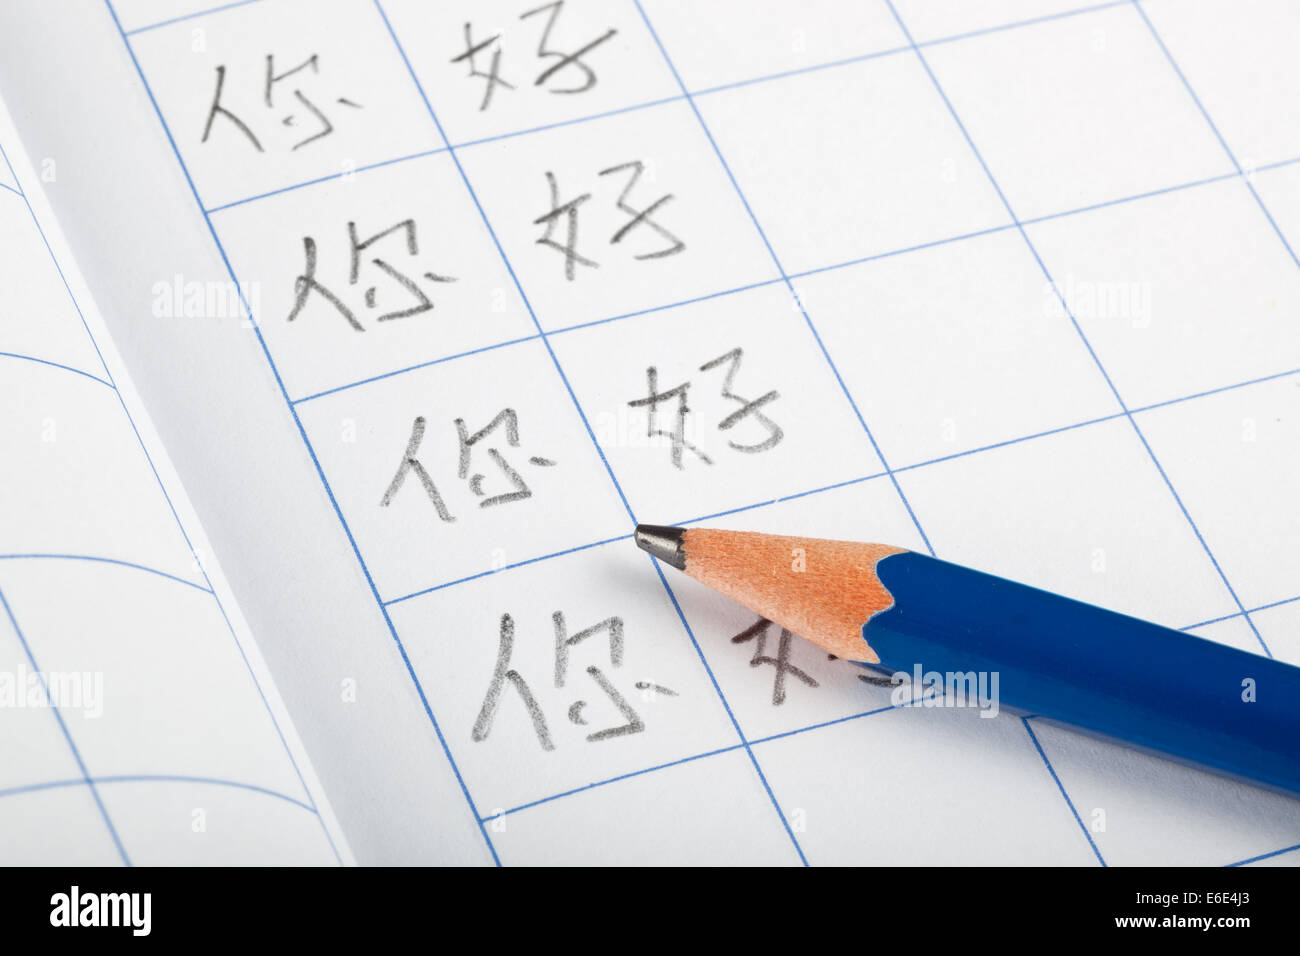 Esercitarsi a scrivere Hello in cinese su un foglio di lavoro Foto Stock